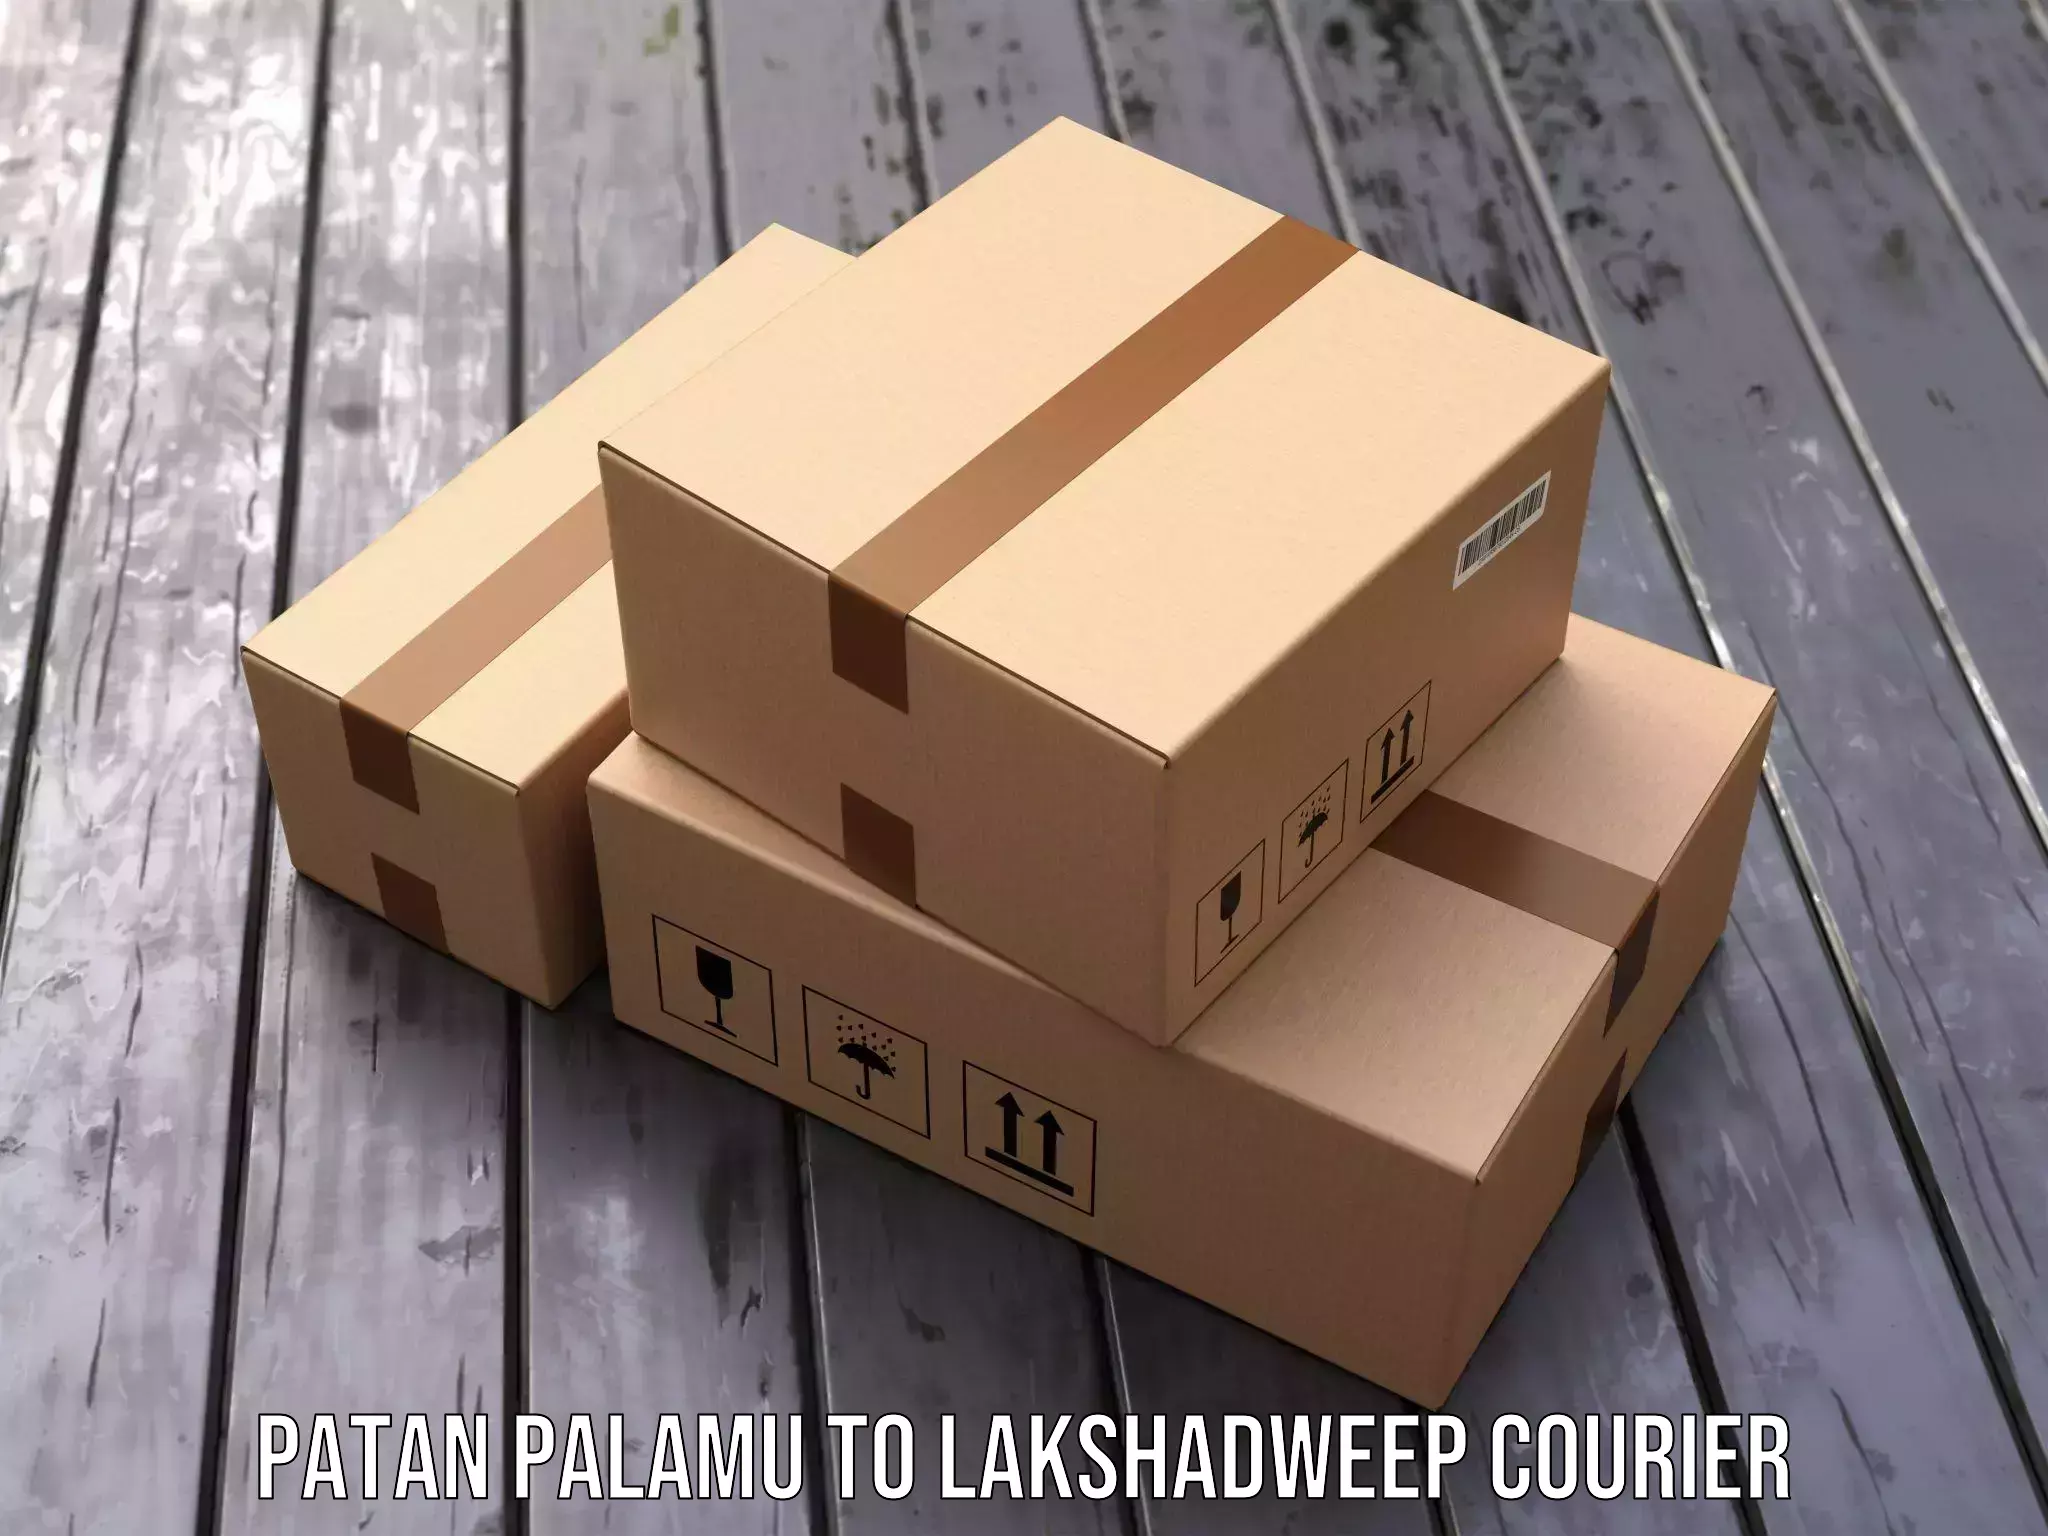 Supply chain delivery Patan Palamu to Lakshadweep